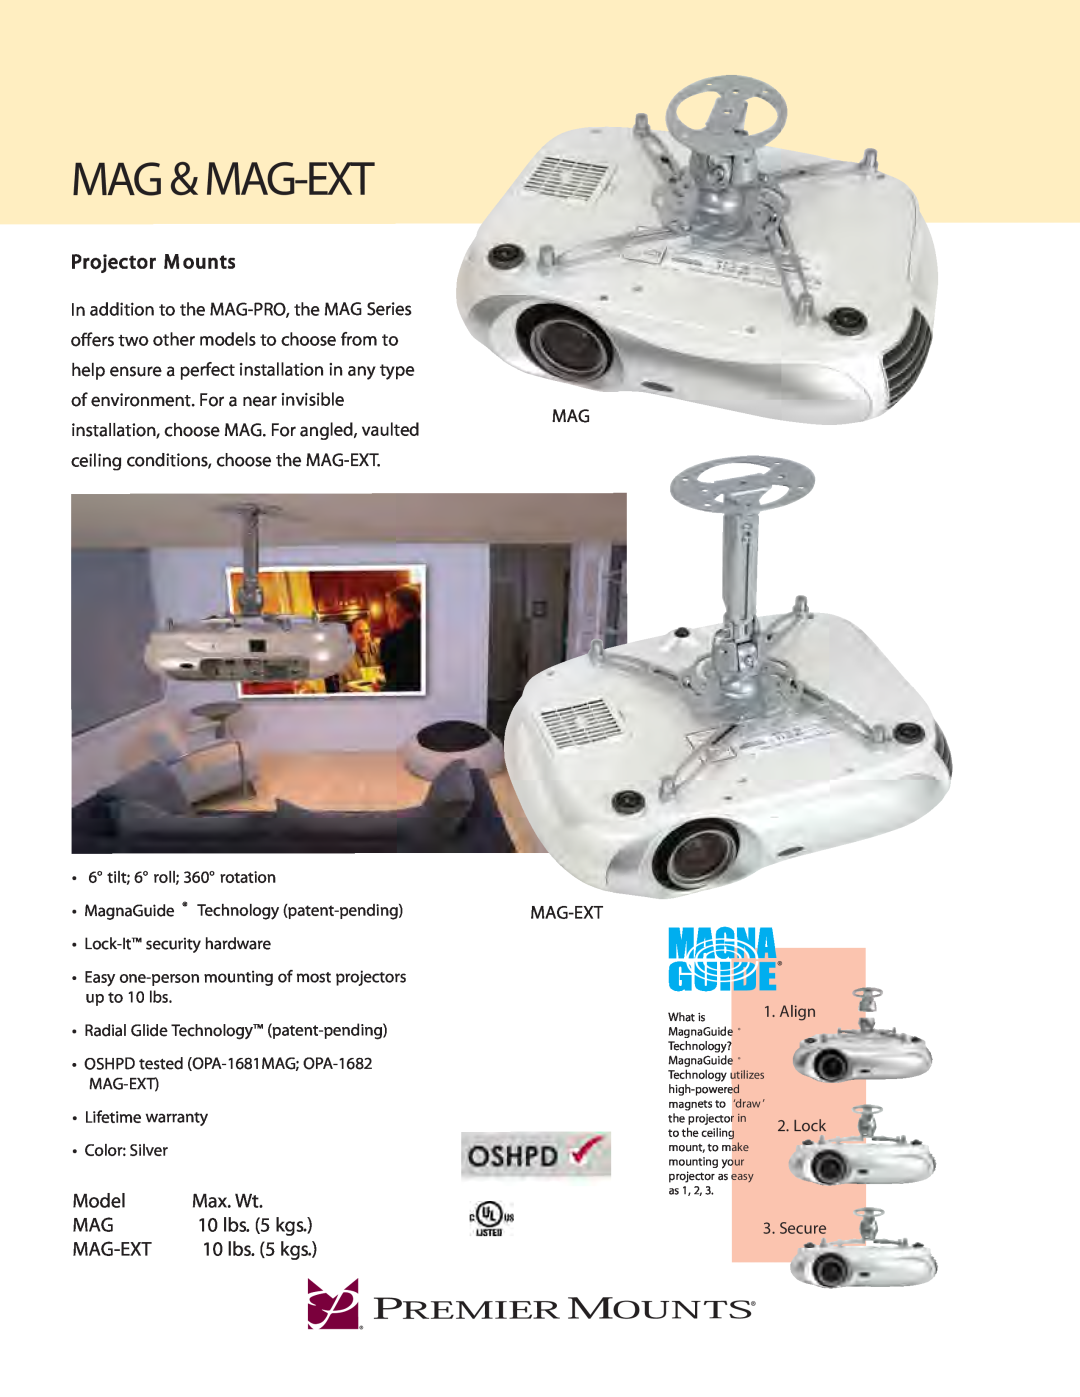 Premier Mounts MAG-EXT warranty Mag & Mag-Ext, Projector M ounts, Model, Max. Wt, Mag Mag-Ext 